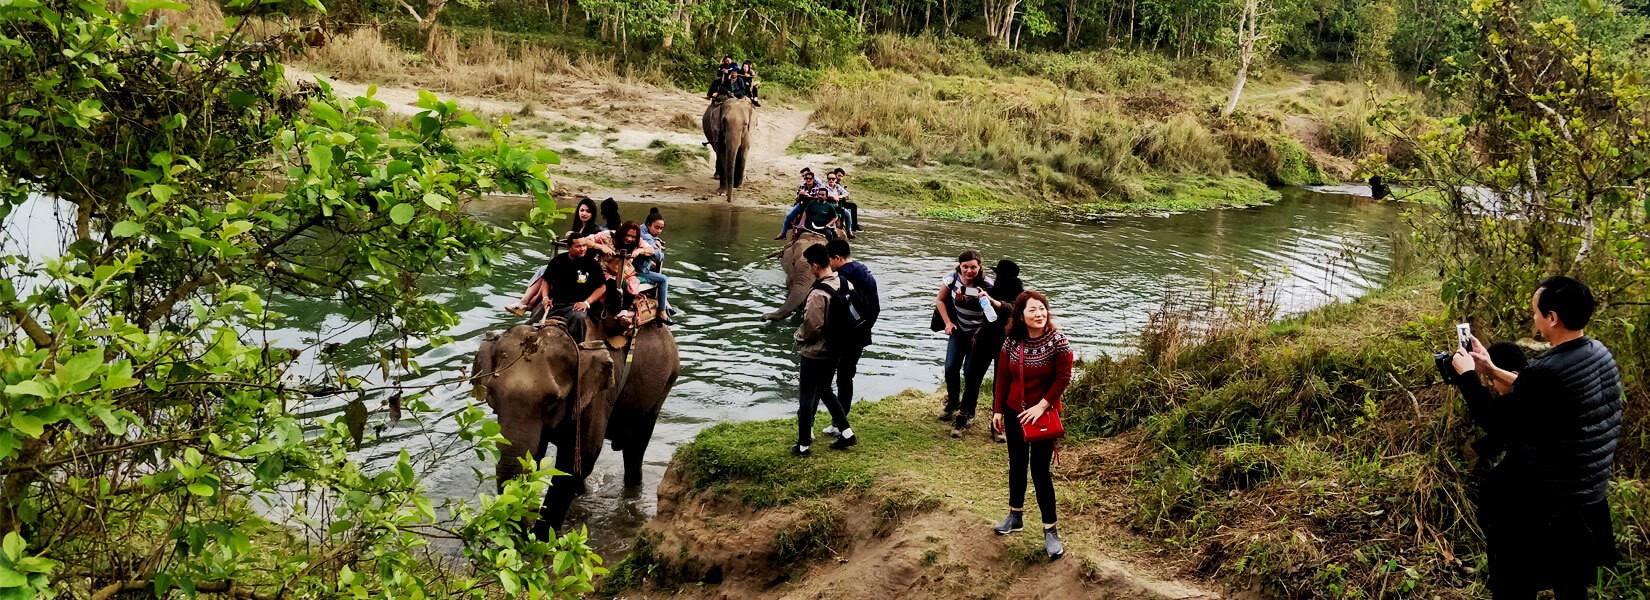 Nepal Jungle Safari Tour